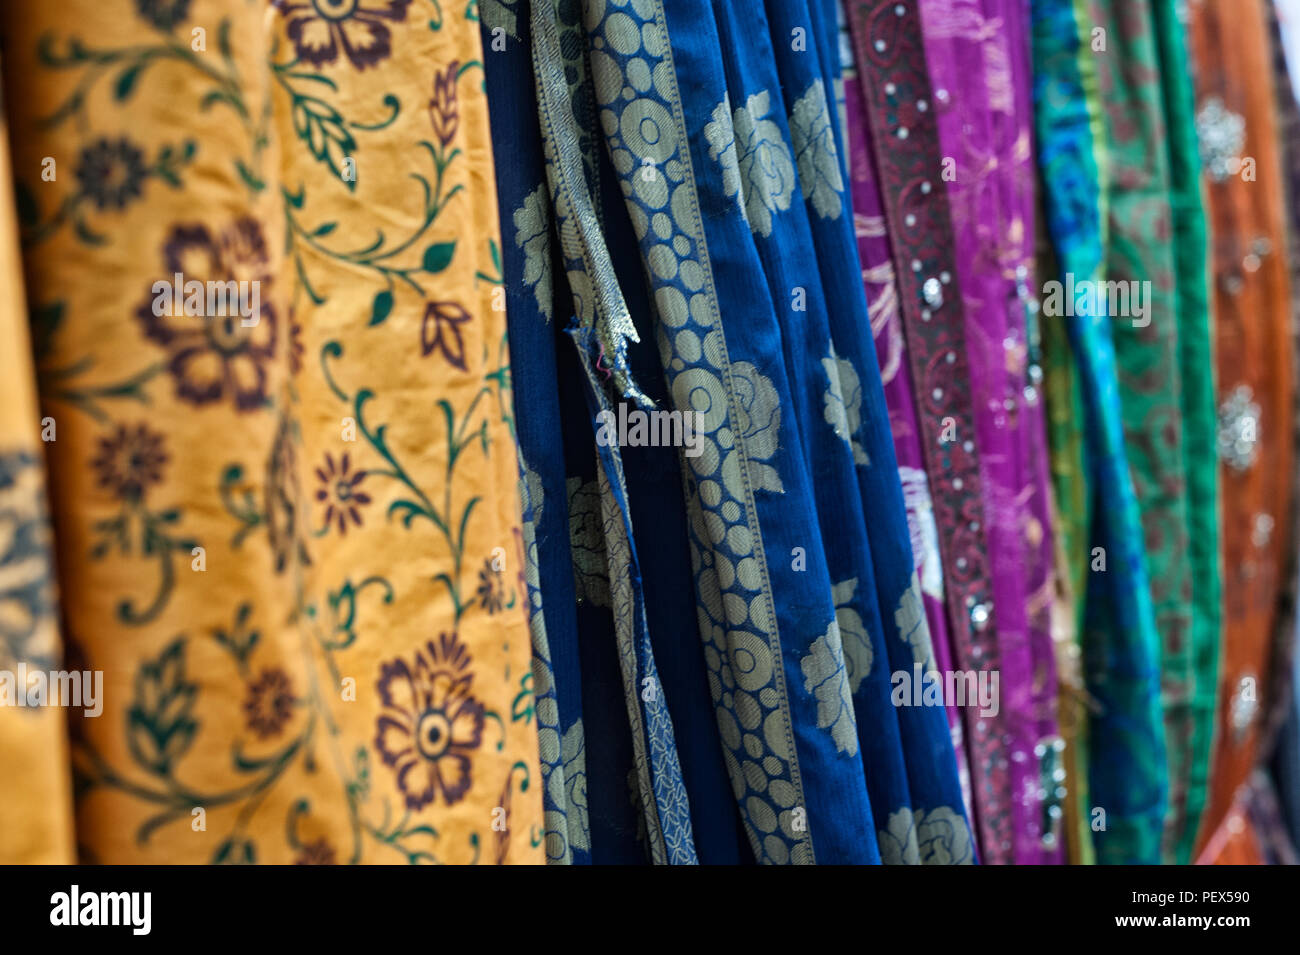 De nombreux types de soies colorées. Le district de Grand Mogol, des tisseurs de soie à Varanasi, Uttar Pradesh, Inde Banque D'Images